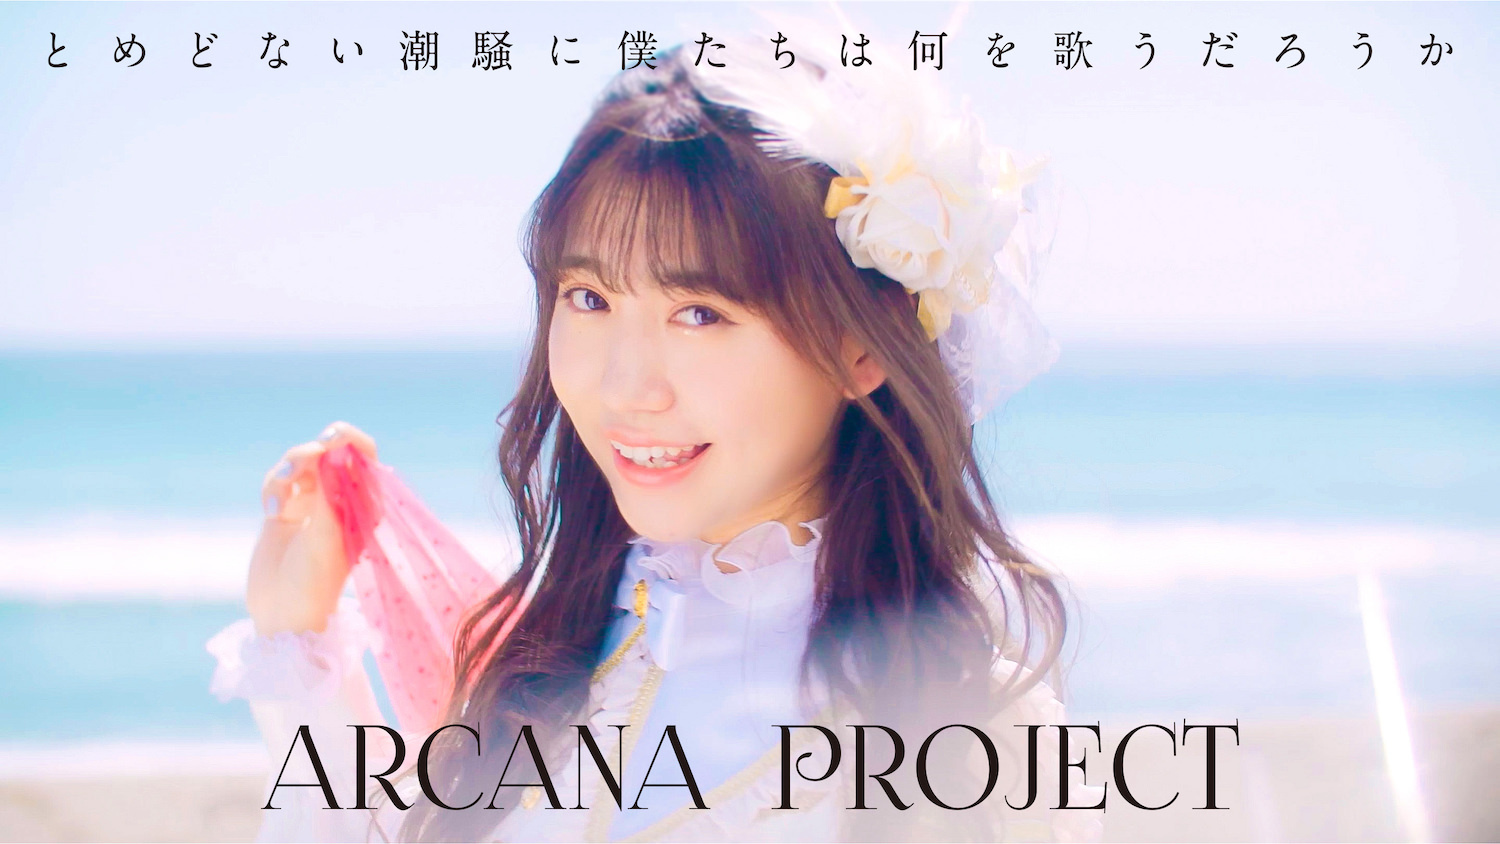 ARCANA PROJECT第四张单曲「とめどない潮騒に仆たちは何を歌うだろうか」MV及单曲封面公开 - itotii